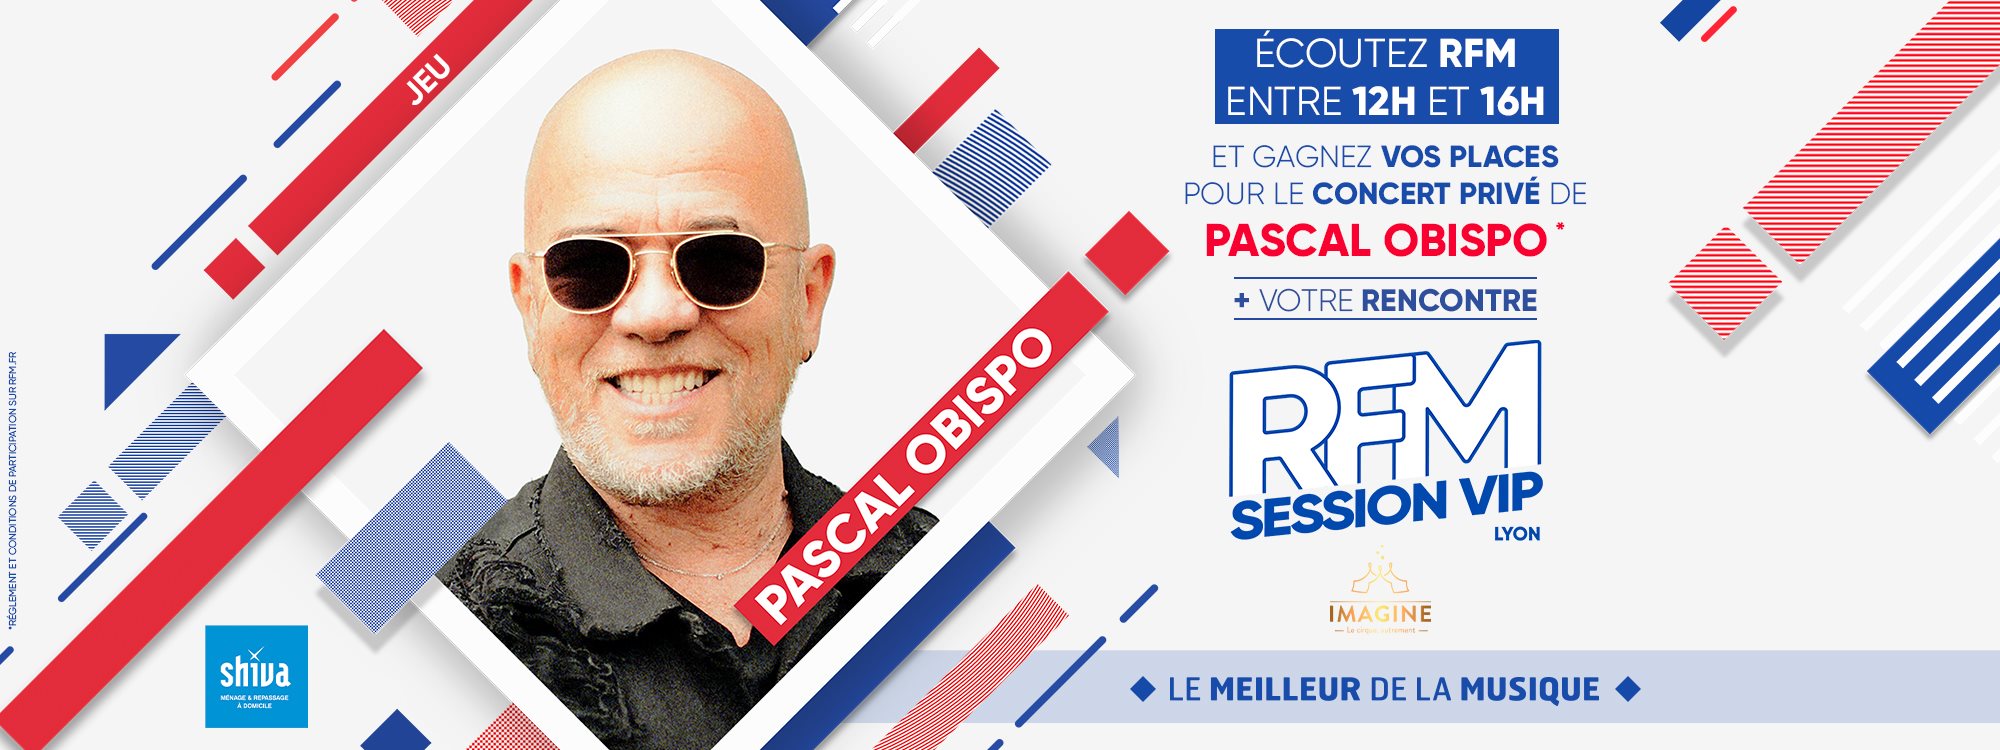 RFM Session VIP avec Pascal Obispo en concert le 15 novembre 2021 au Cirque Imagine